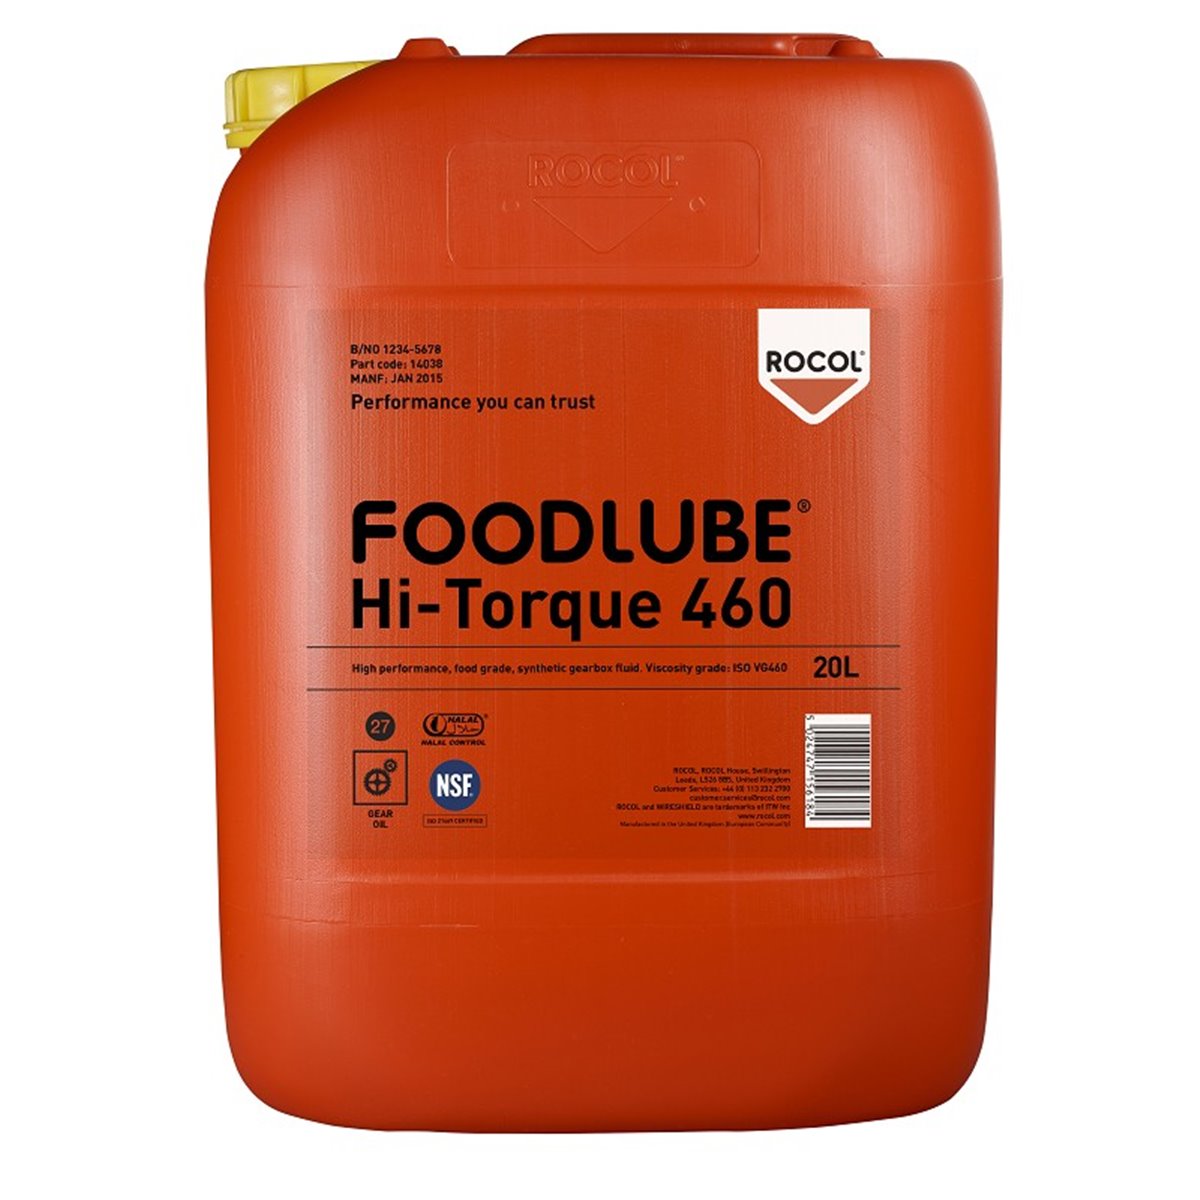 FOODLUBE HI-TORQUE 460 Rocol 20l RS15775